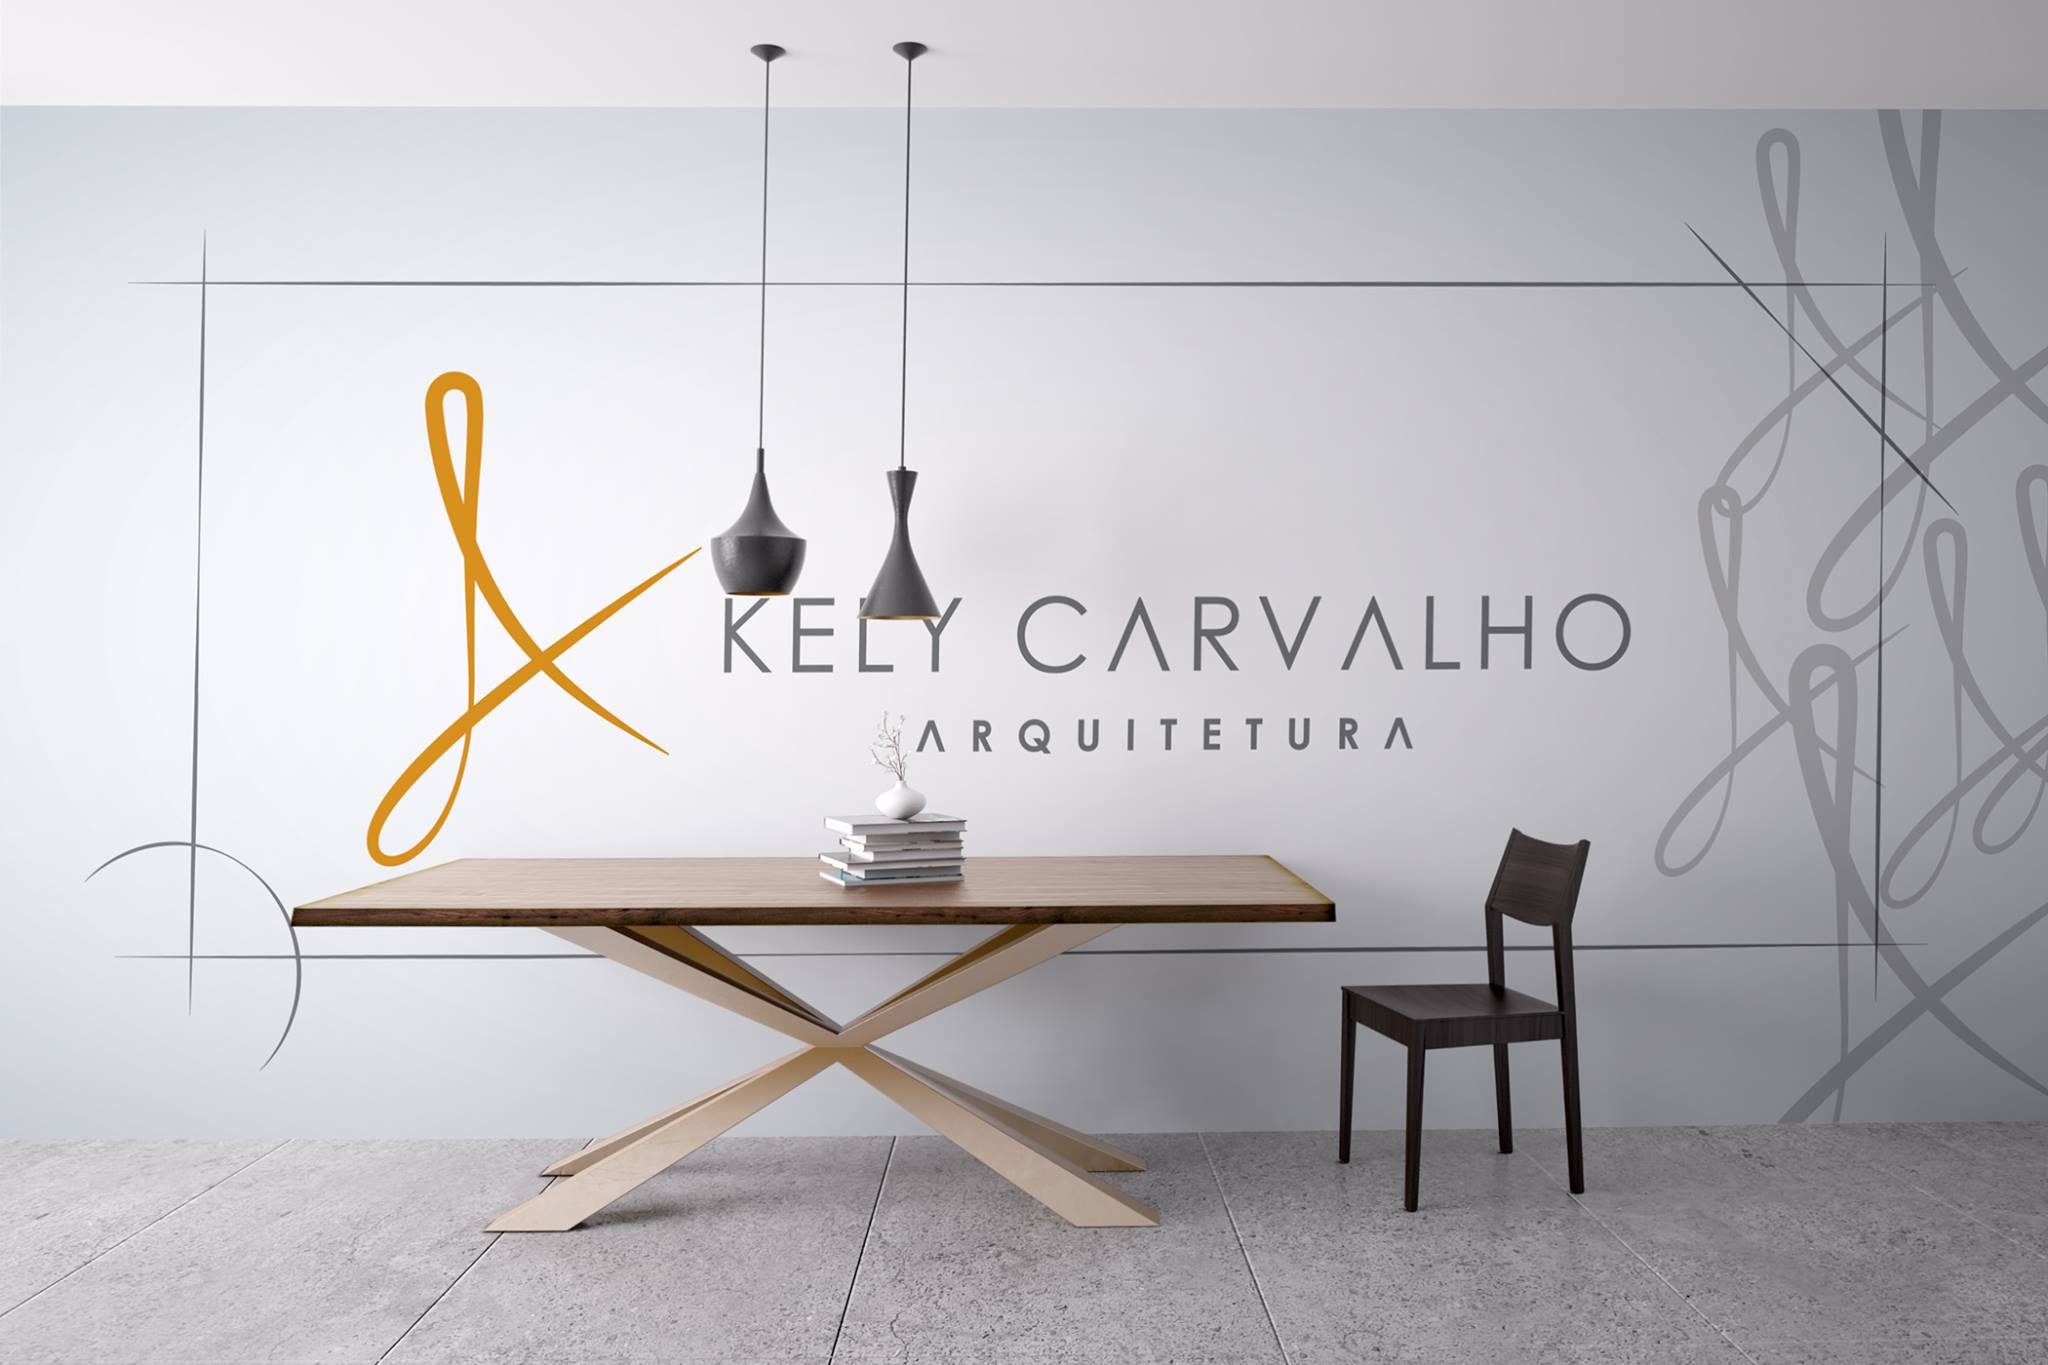 Kely Carvalho arquitetura, vídeo produzido pela Grude